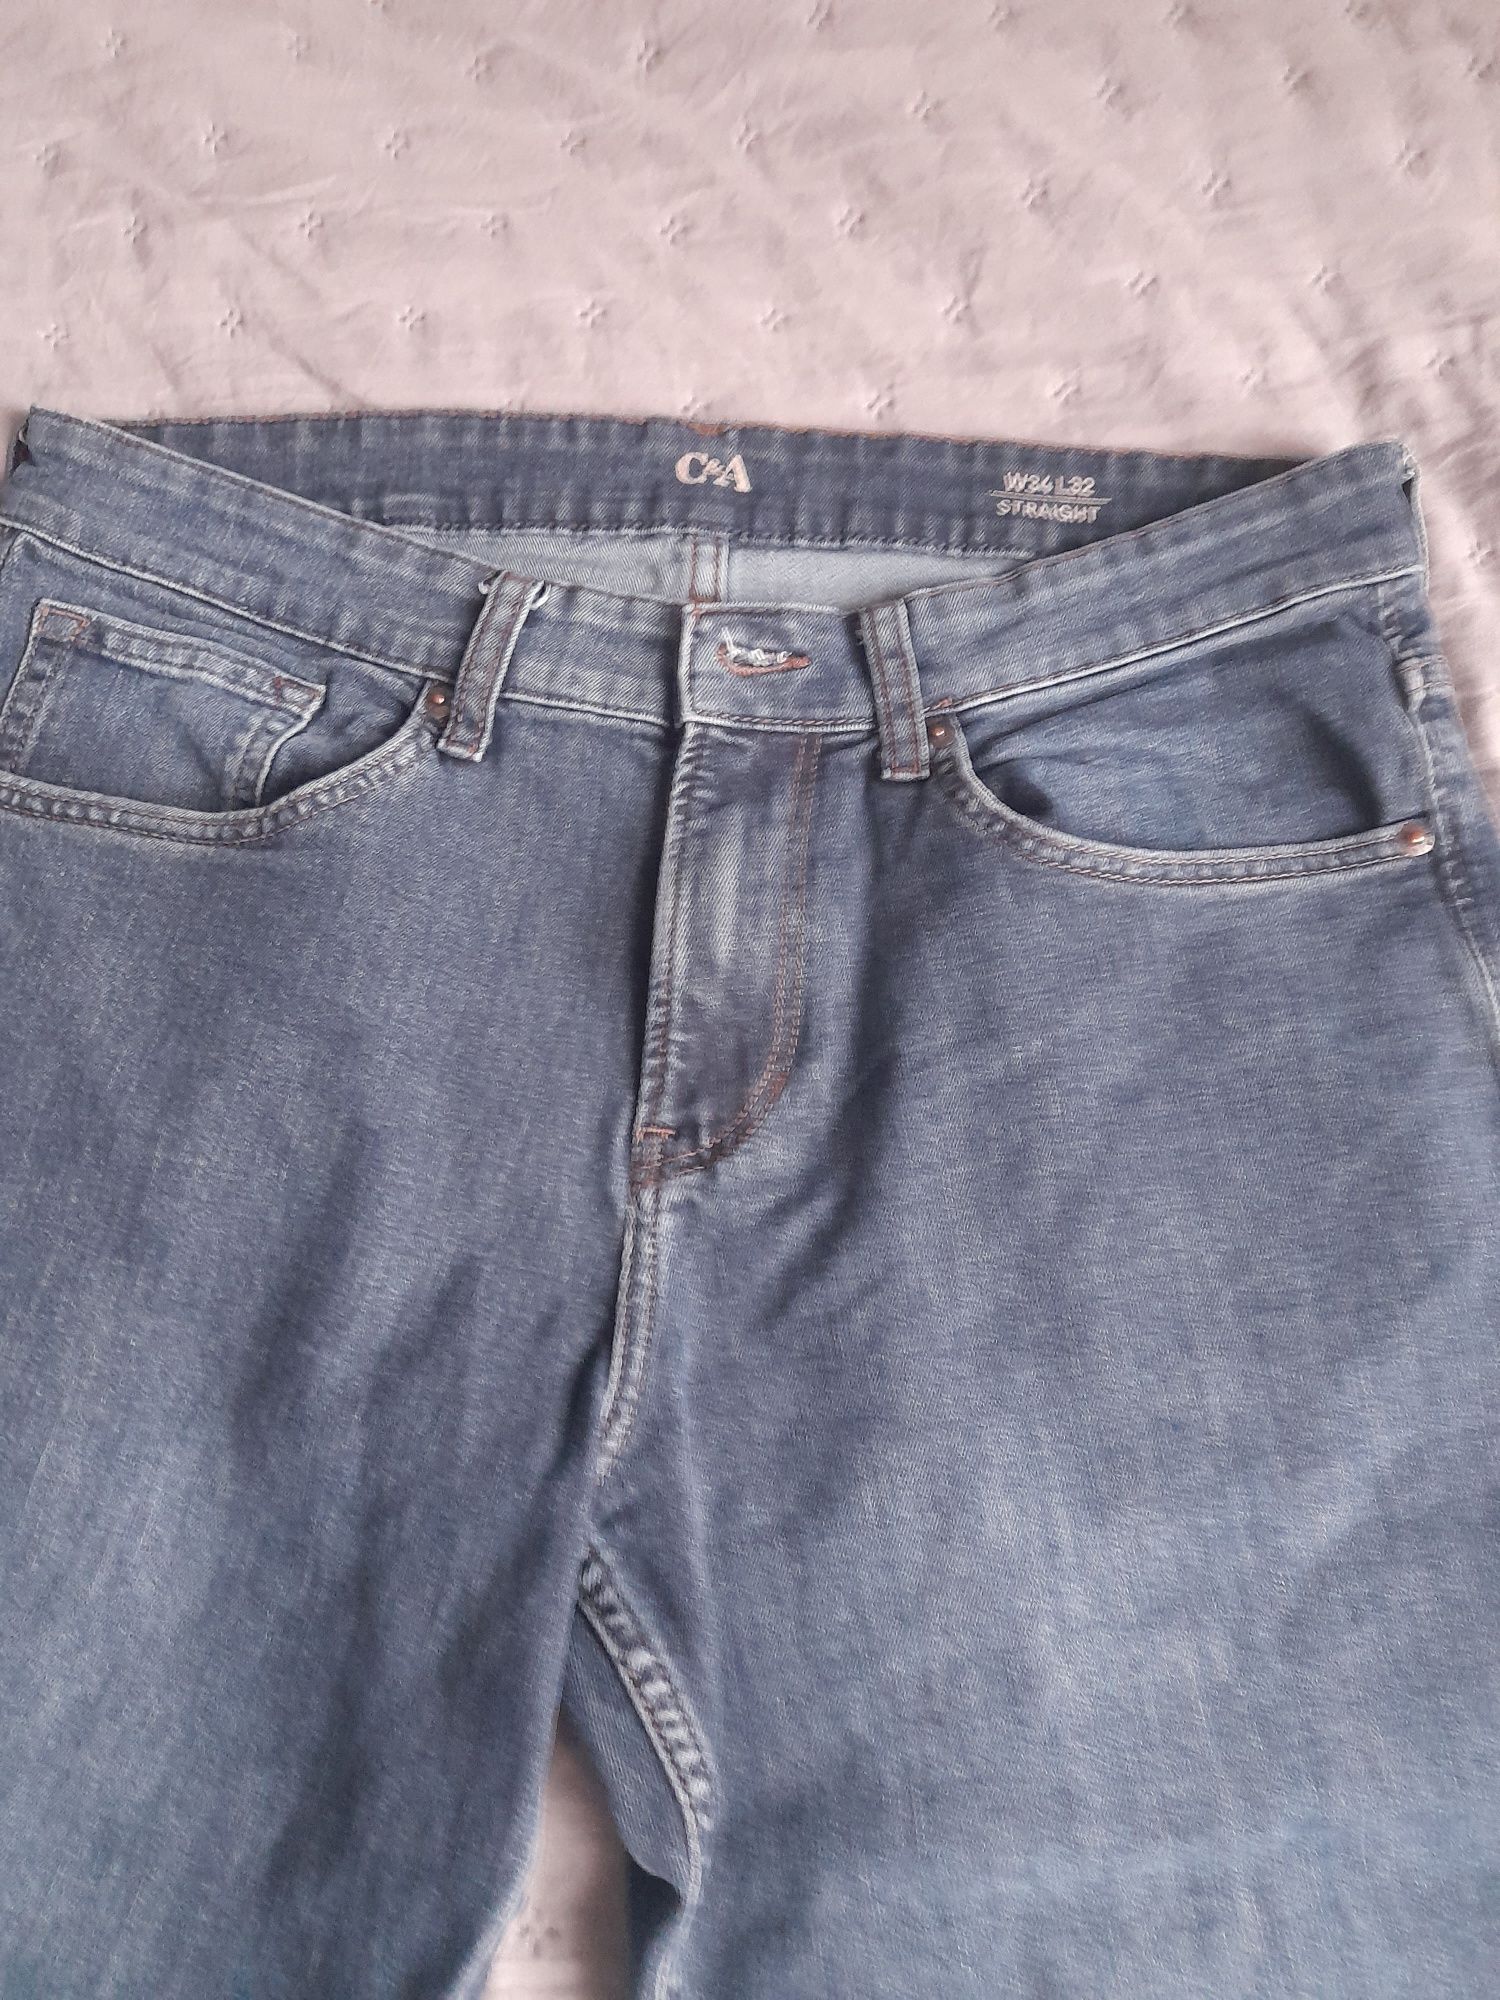 Spodnie jeansowe męskie C&A 34/32